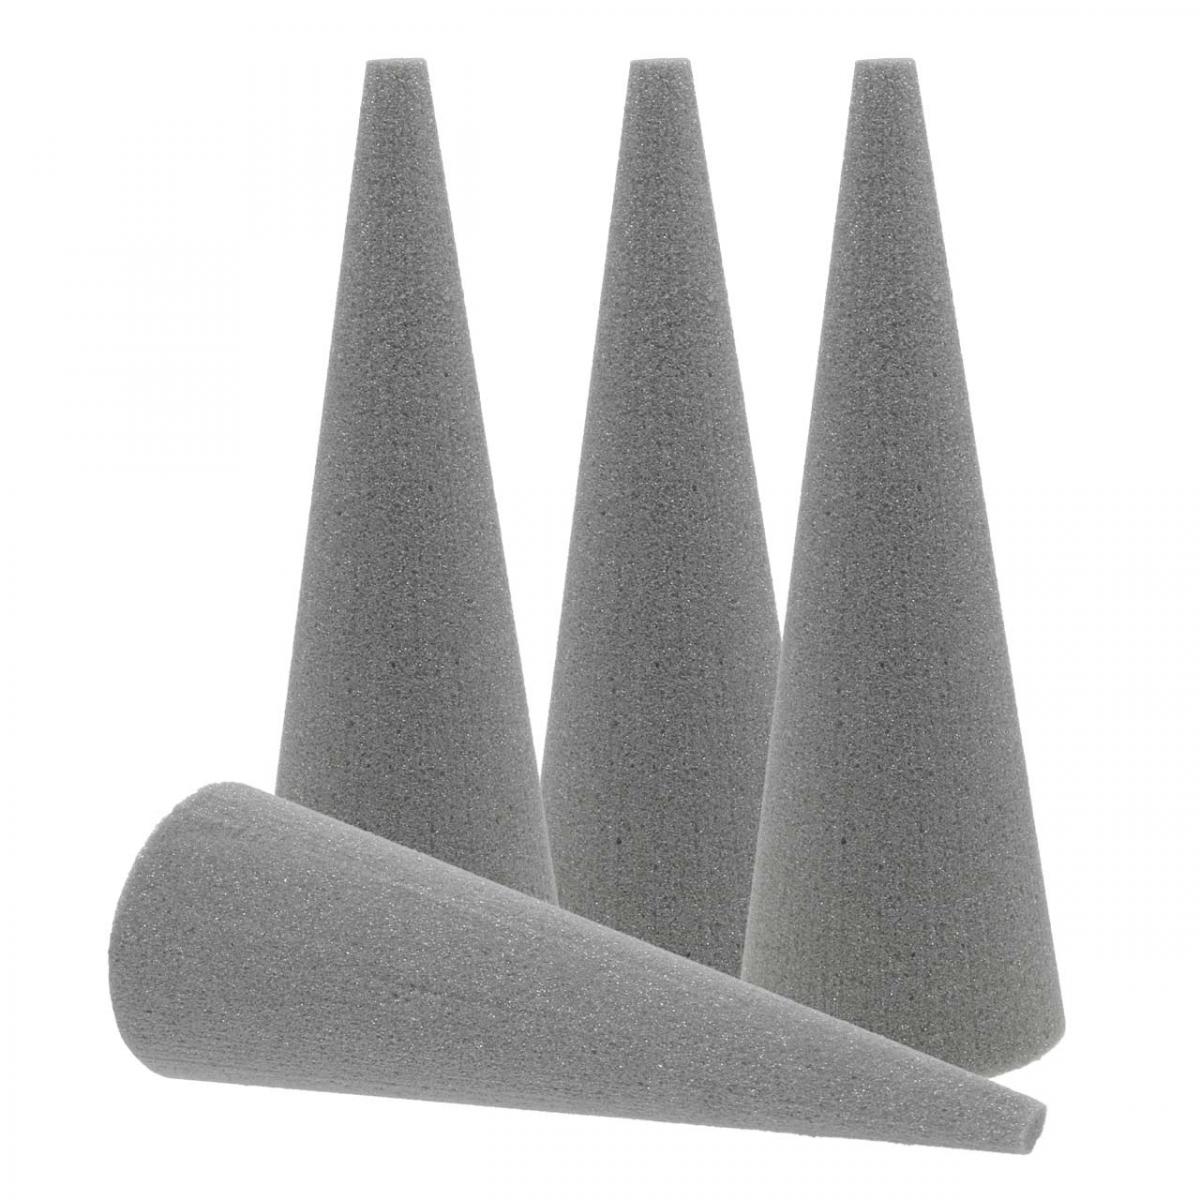 OASIS® SEC Dry Foam Cone 60cm